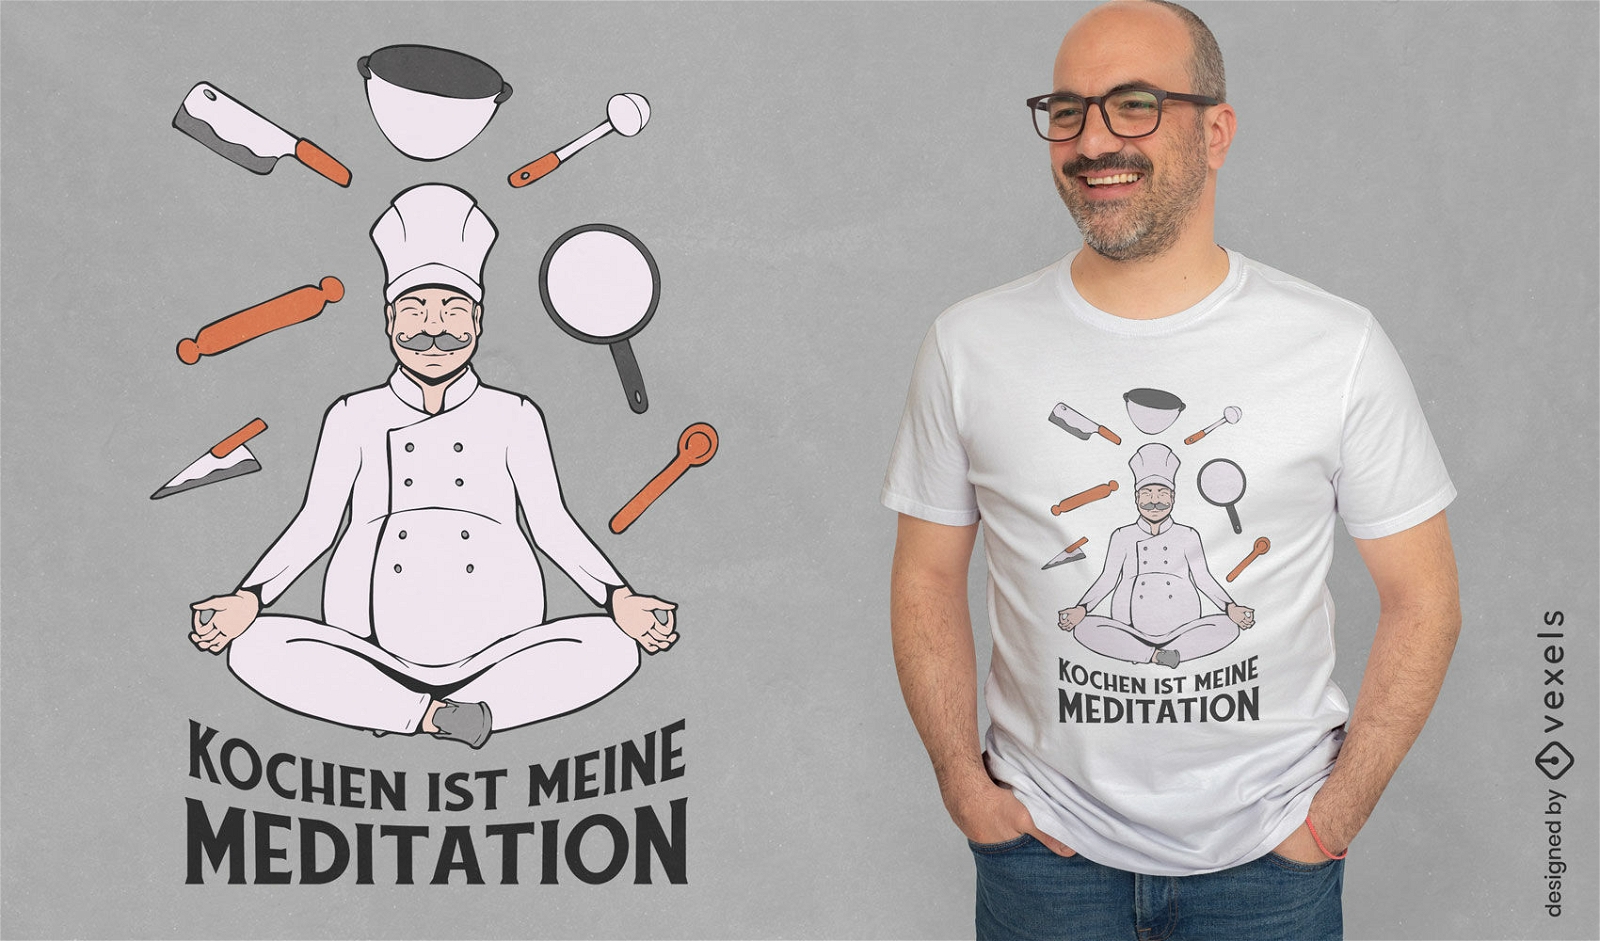 Chef cocina dise?o de camiseta de meditaci?n.